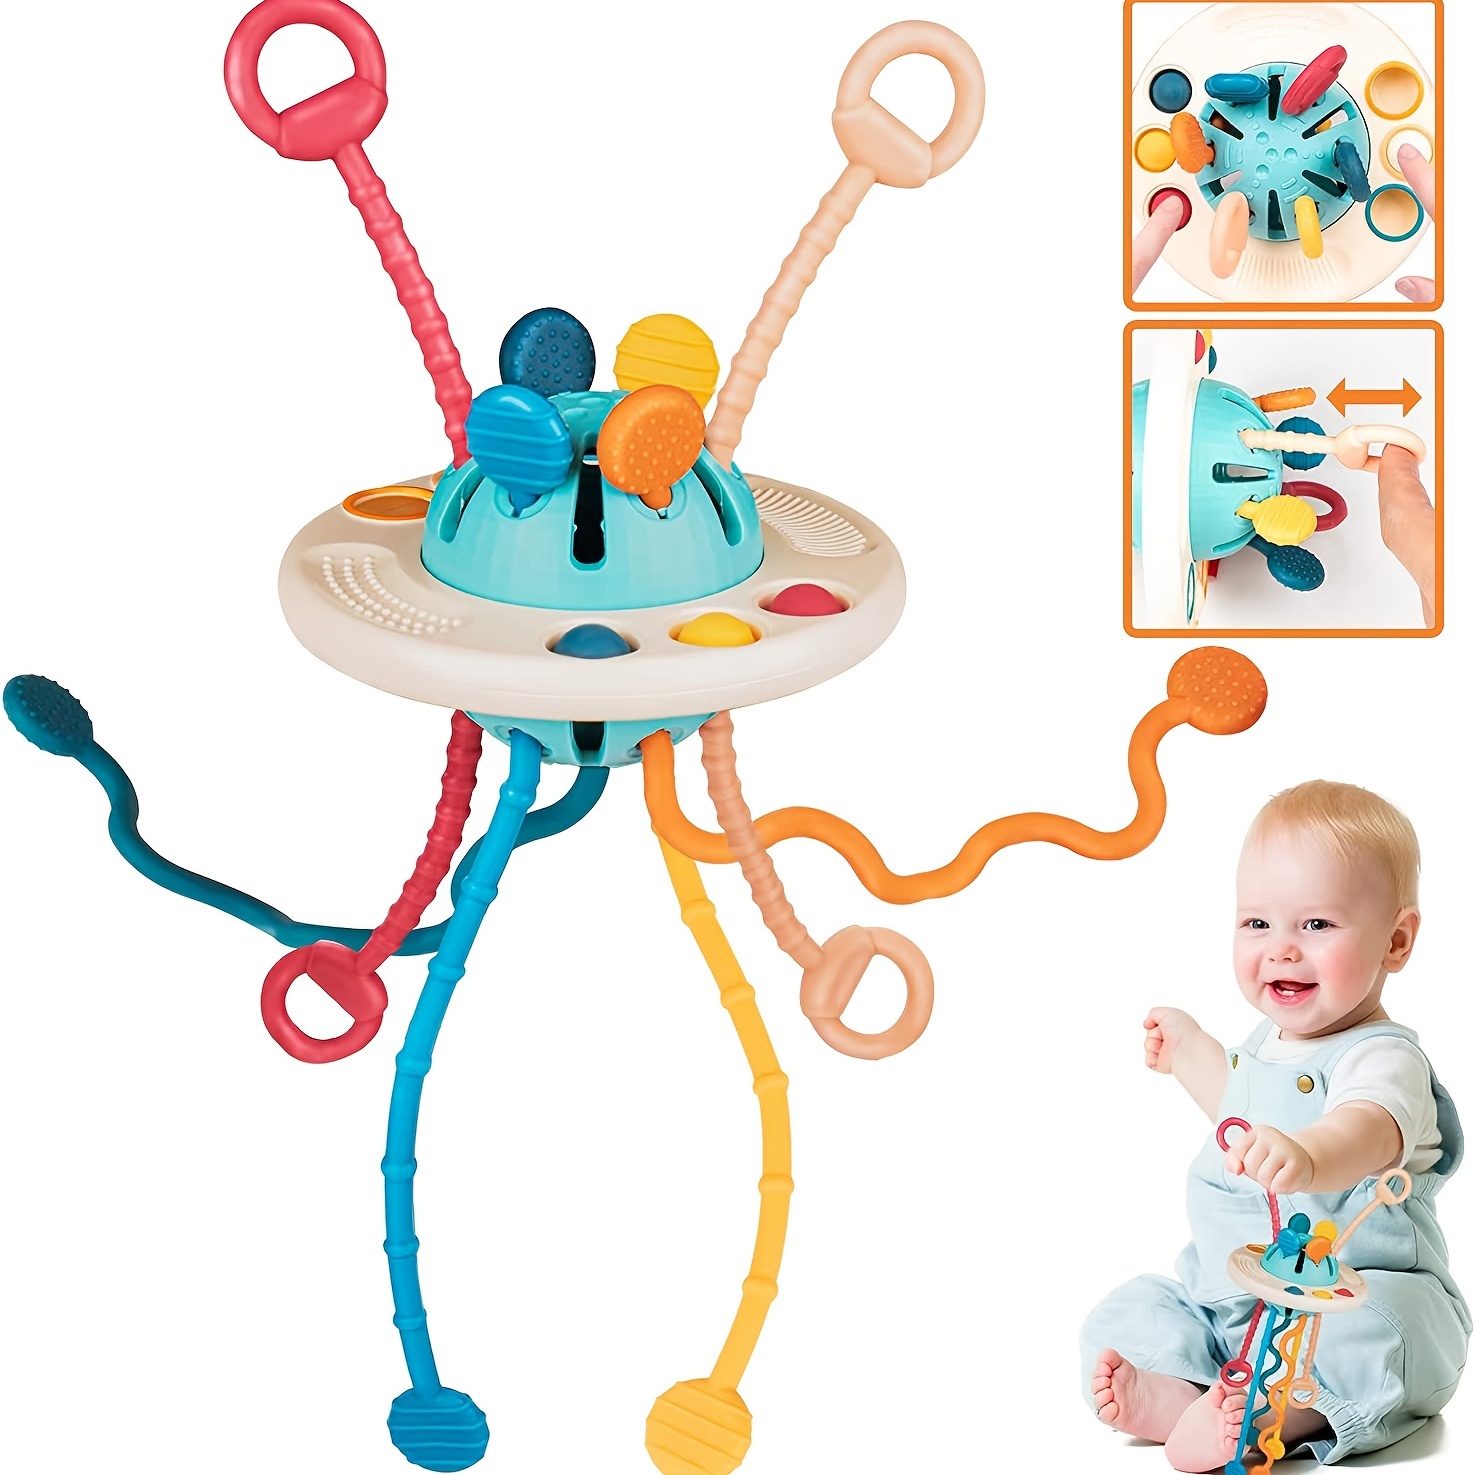 Juguetes para bebés de más de 18 meses, juguetes de viaje y dentición para  bebé, juguetes sensoriales de cuerda de grado alimenticio para niños